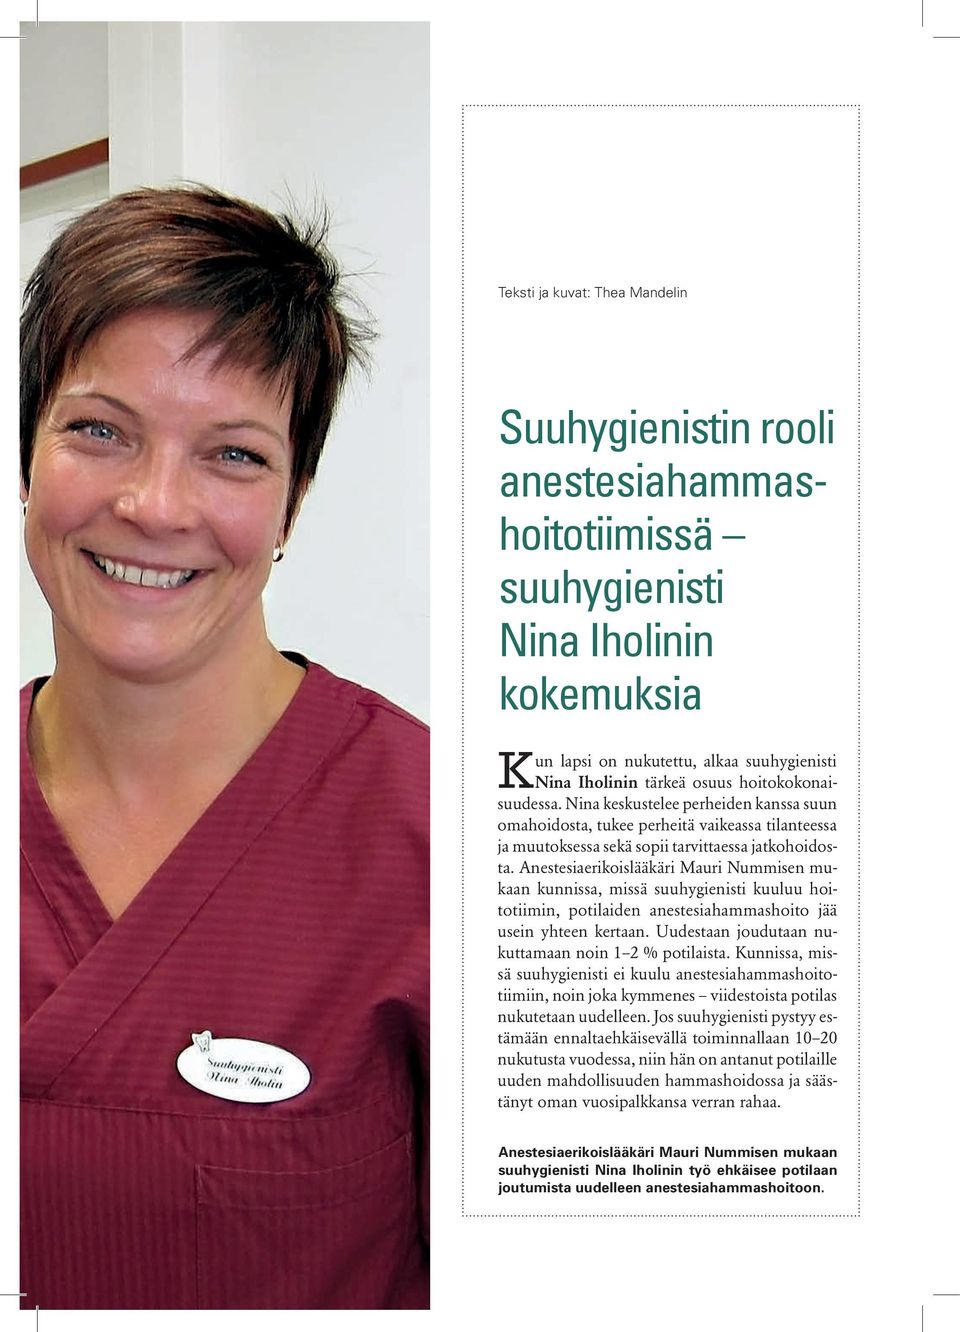 Anestesiaerikoislääkäri Mauri Nummisen mukaan kunnissa, missä suuhygienisti kuuluu hoitotiimin, potilaiden anestesiahammashoito jää usein yhteen kertaan.